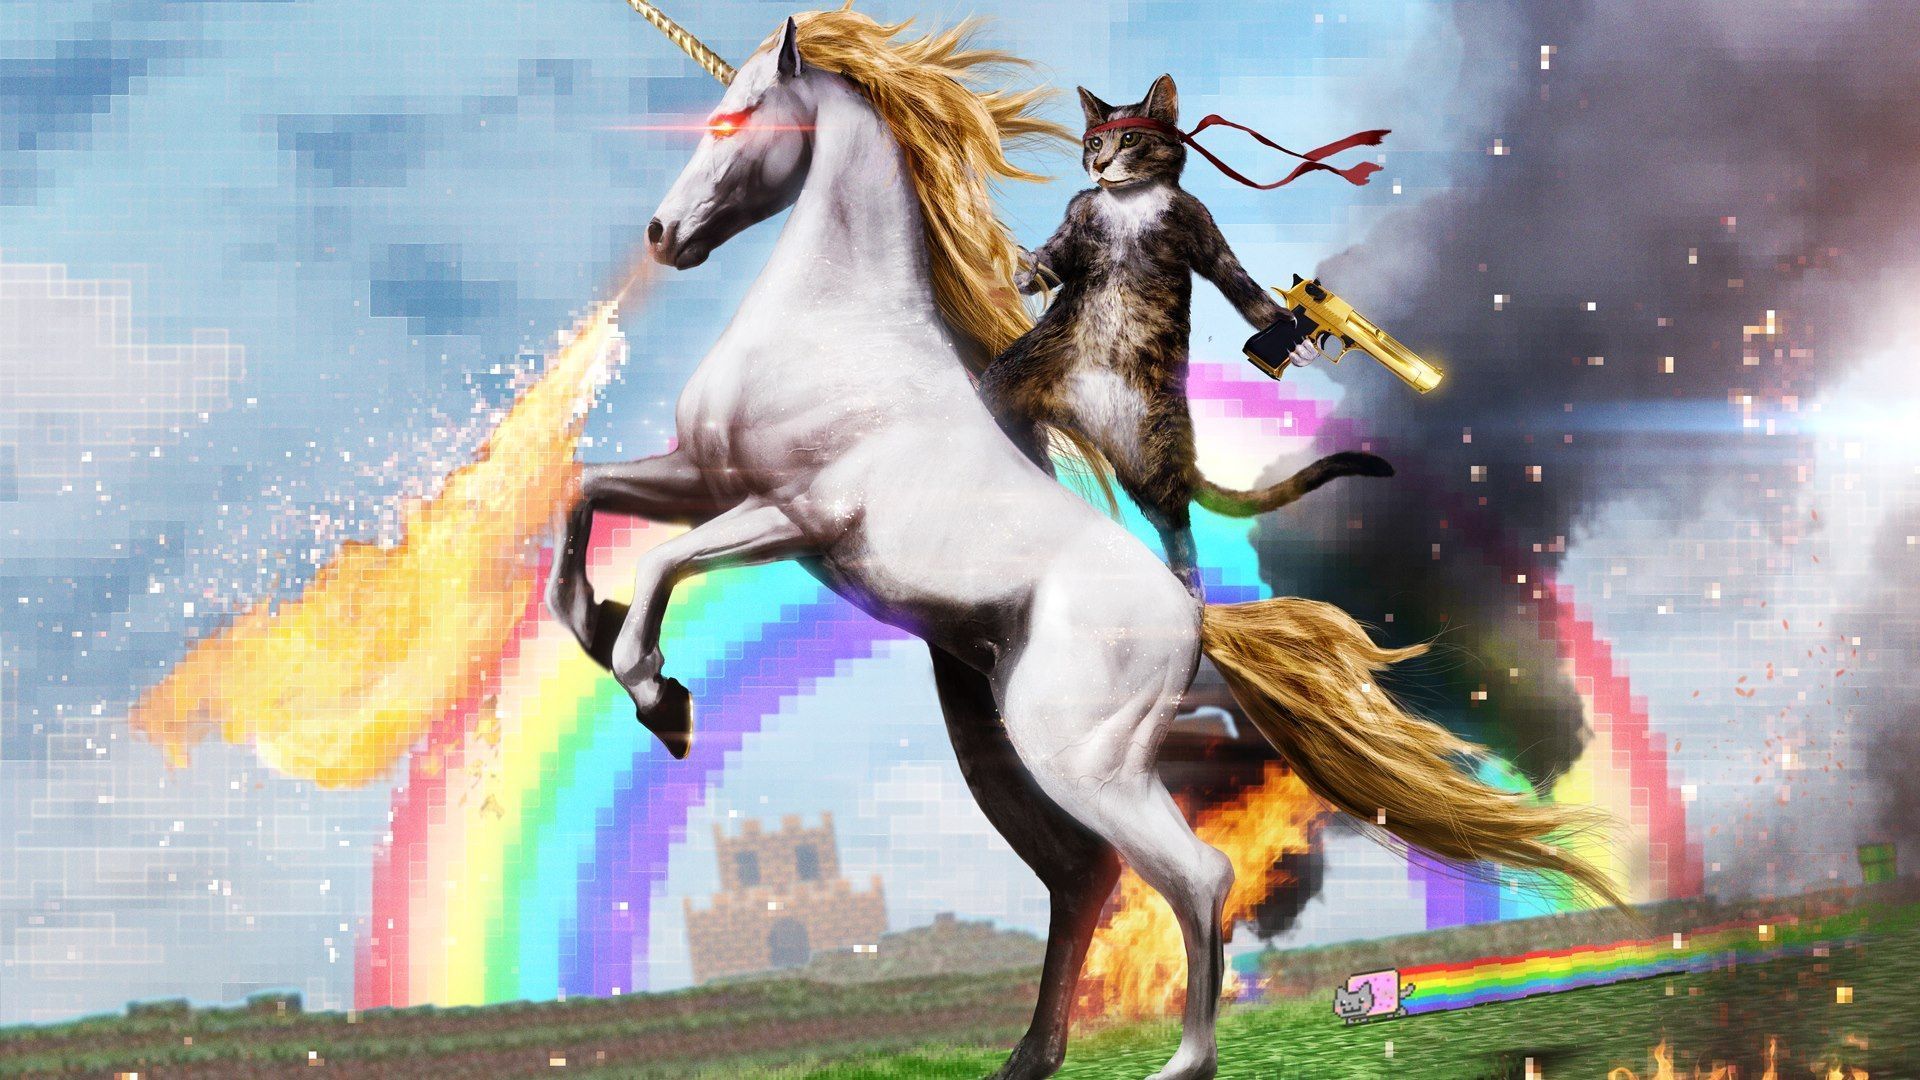 Cat Riding A Horse HD Wallpaper | 1920x1080 | ID:46732